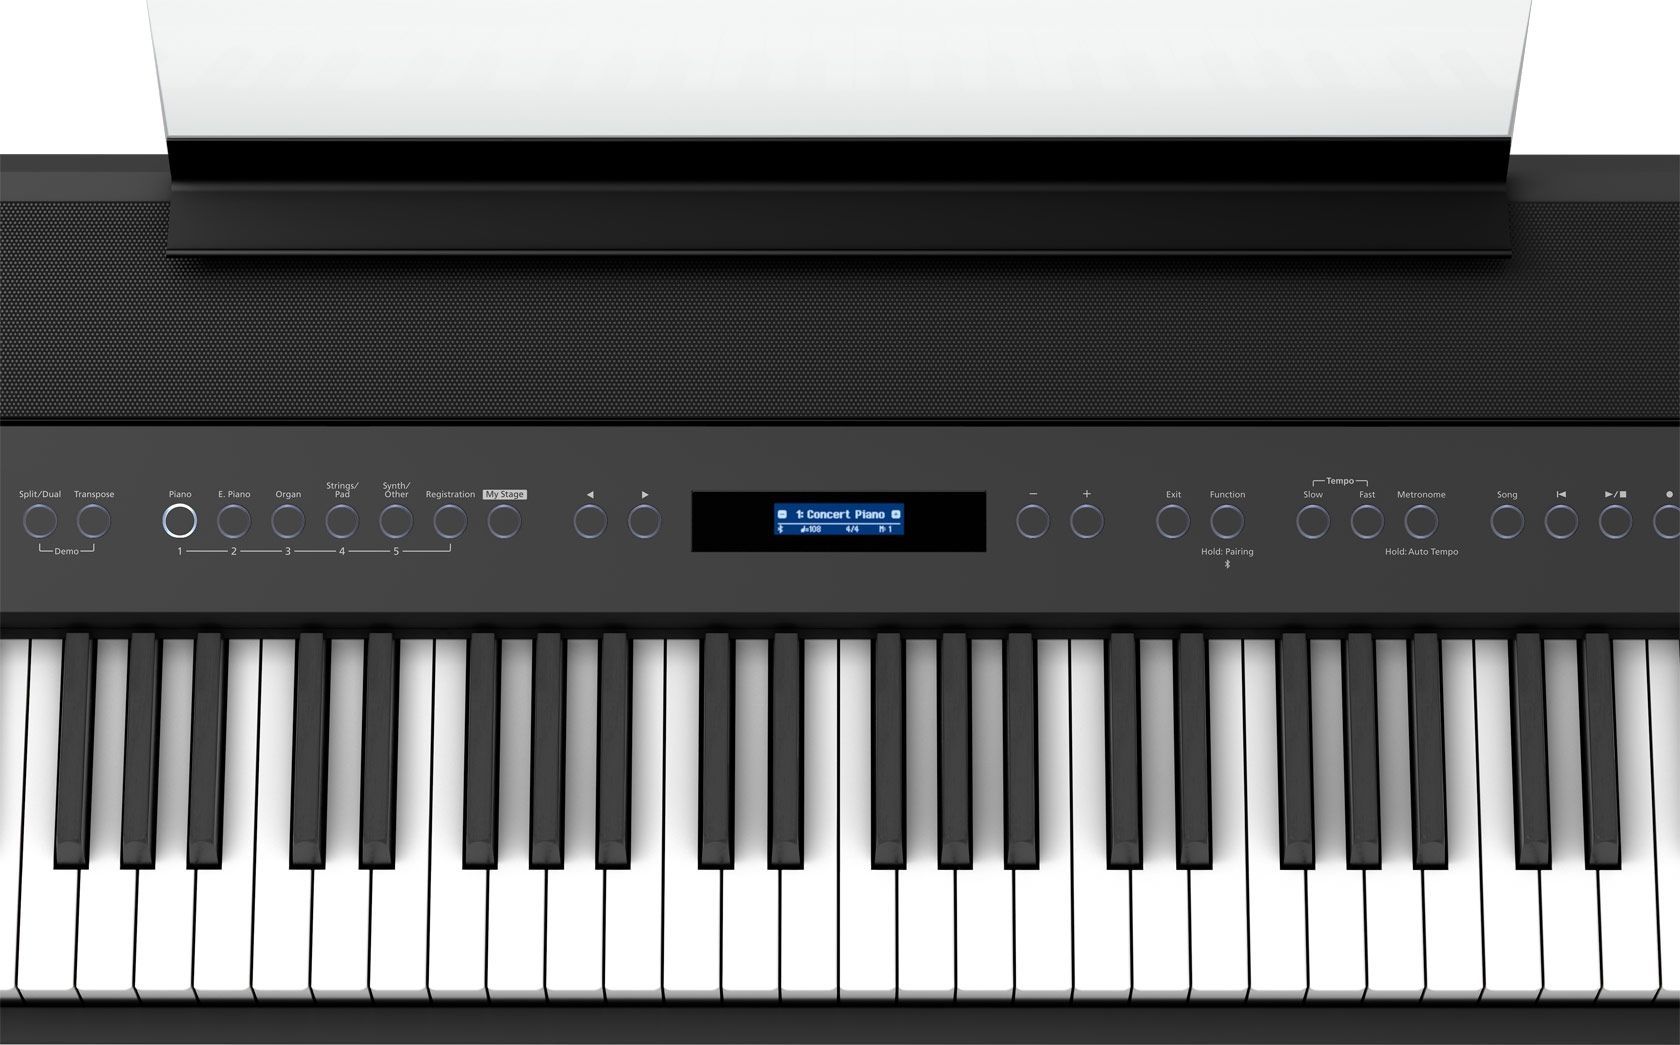 Roland FP-90X-BK Stagepiano schwarz Digitalpiano mit Lautsprechern, FP90xBK 